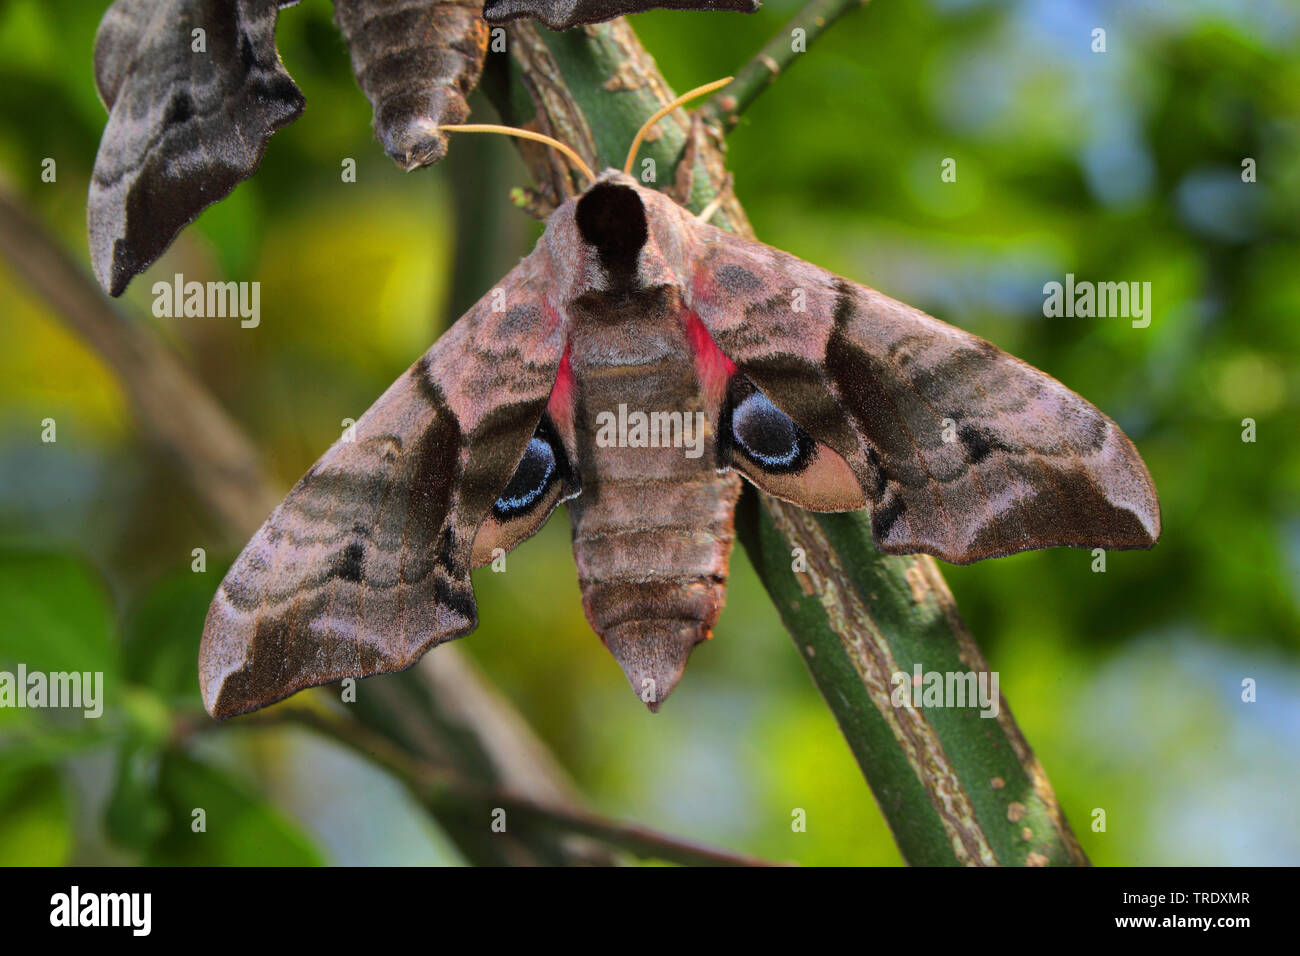 Eyed Hawk-Moth, Eyed Hawkmoth, Hawkmoths Hawk-moths (Smerinthus ocellata, Smerinthus ocellatus), top view, Germany Stock Photo